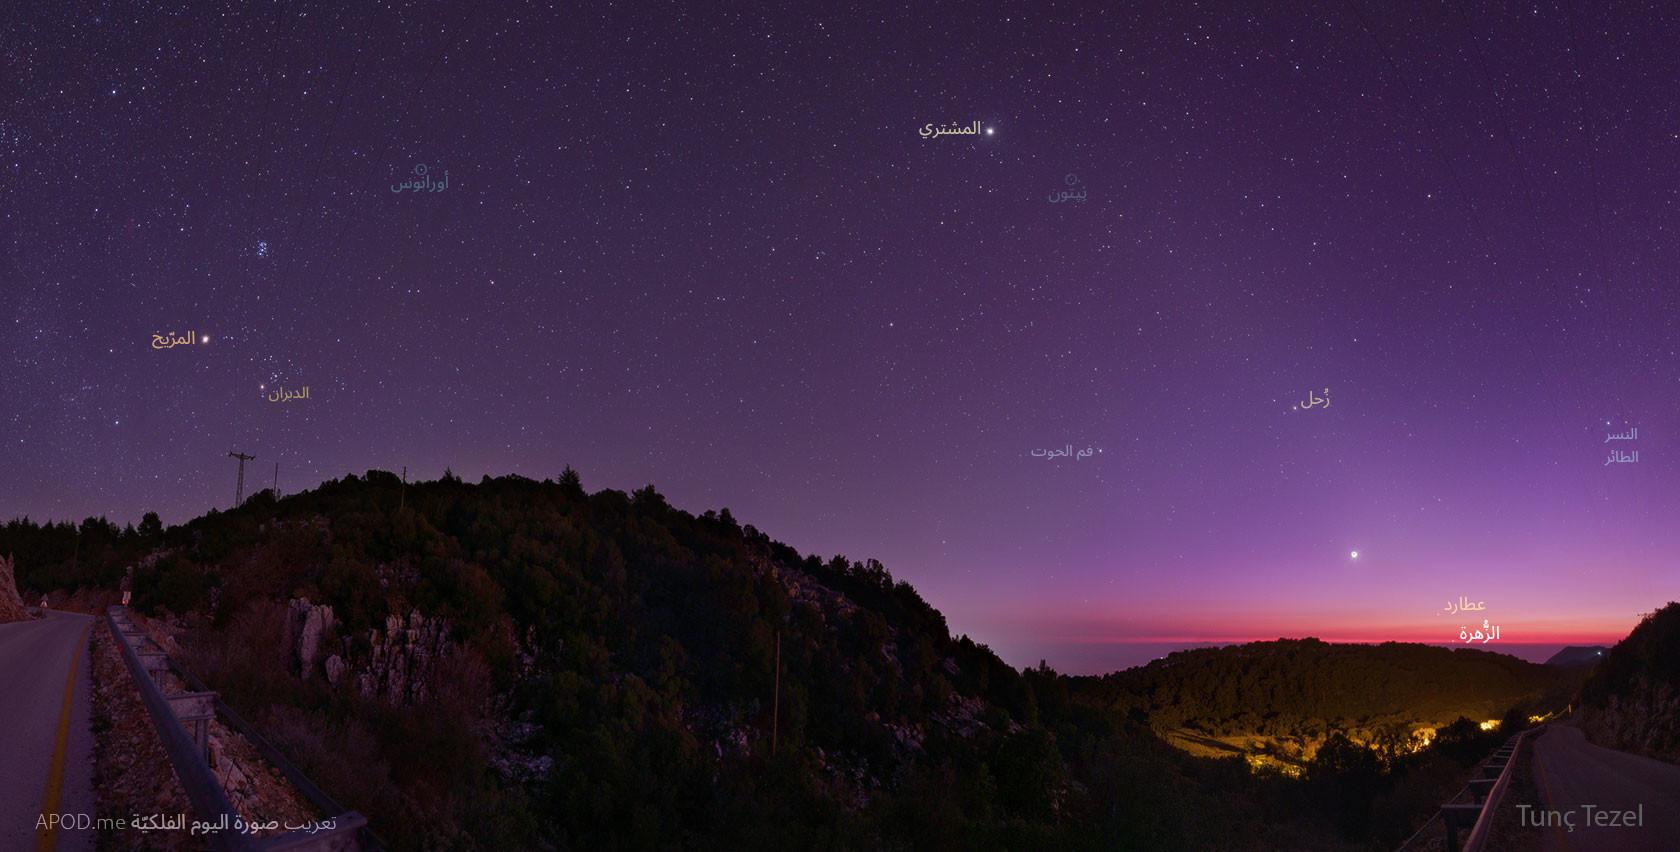 صورة عريضة الزاوية تظهر قرية تركيّة في المقدّمة وسماء تحتوي كواكب من مجموعتنا الشمسيّة في الخلفيّة